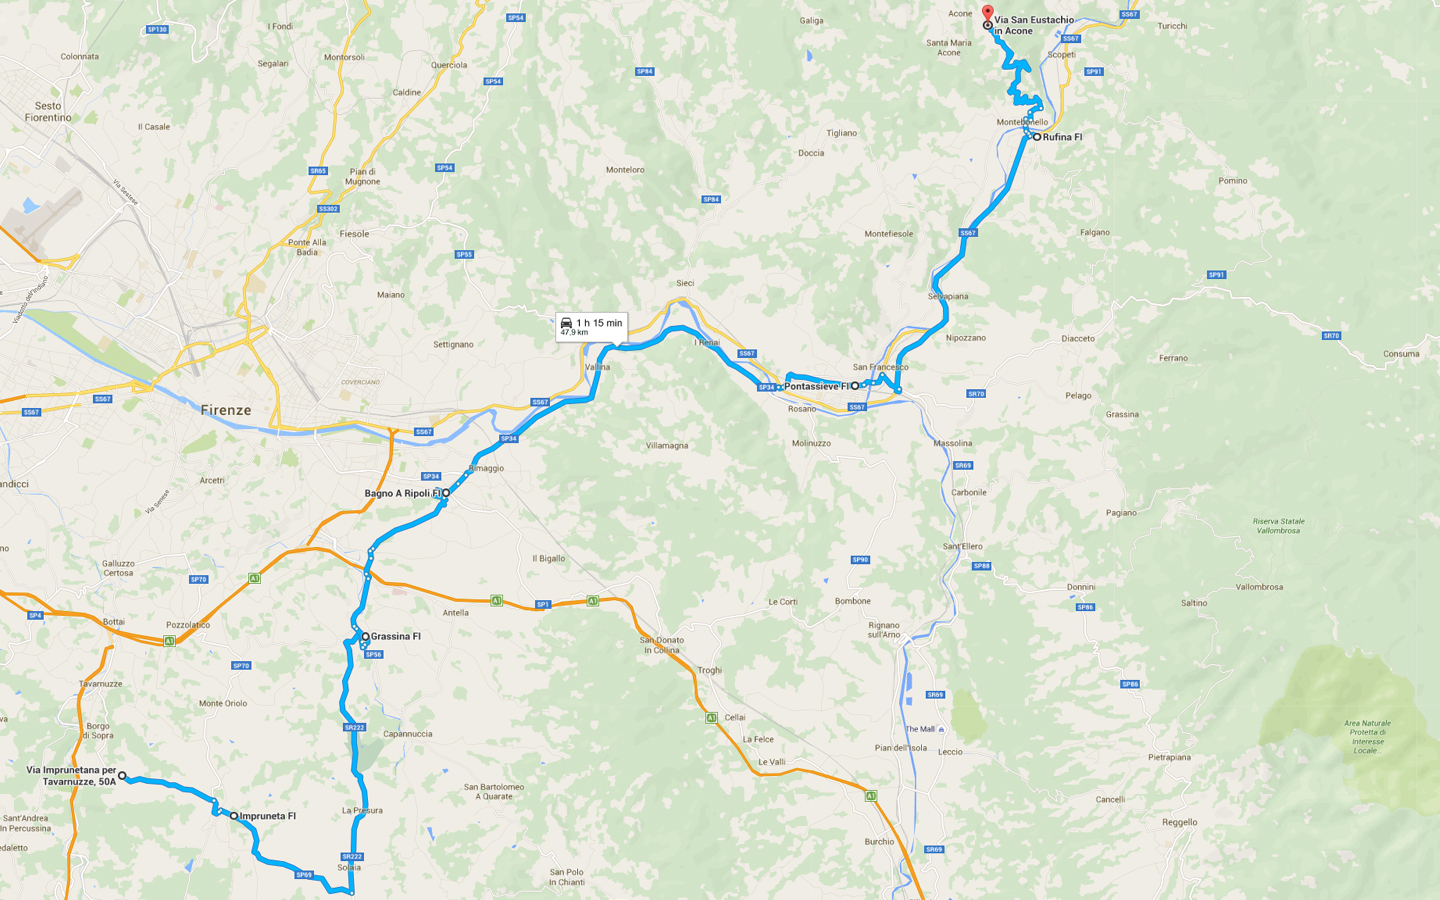 Motopenna - Itinerario 2016 - Seconda tappa: da Bagnolo a Acone (clicca la mappa per ingrandire)